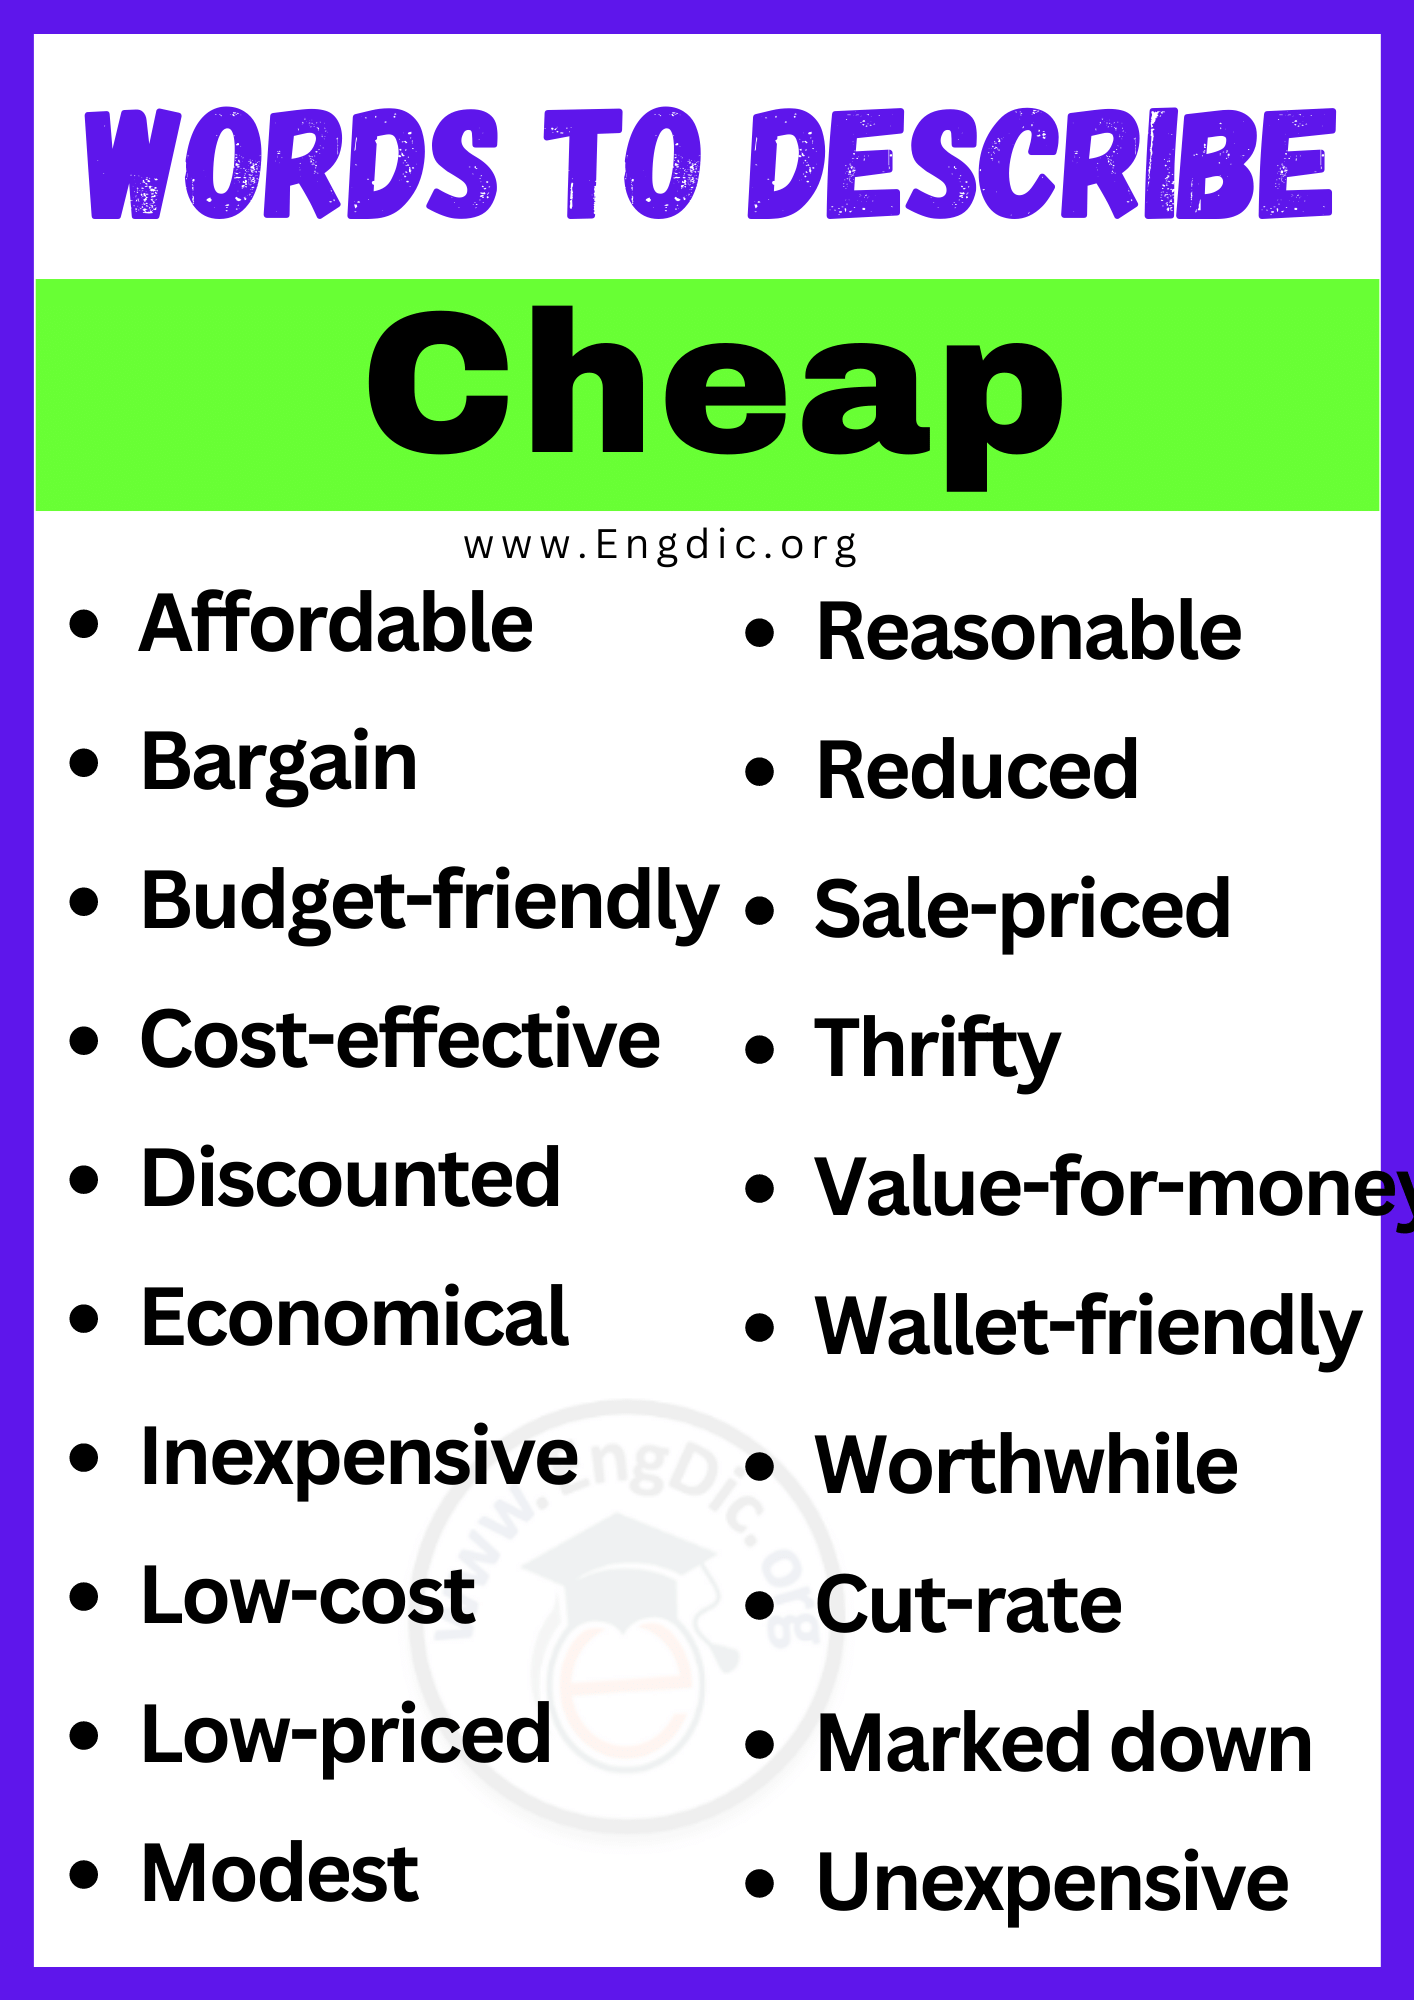 Words to Describe Cheap